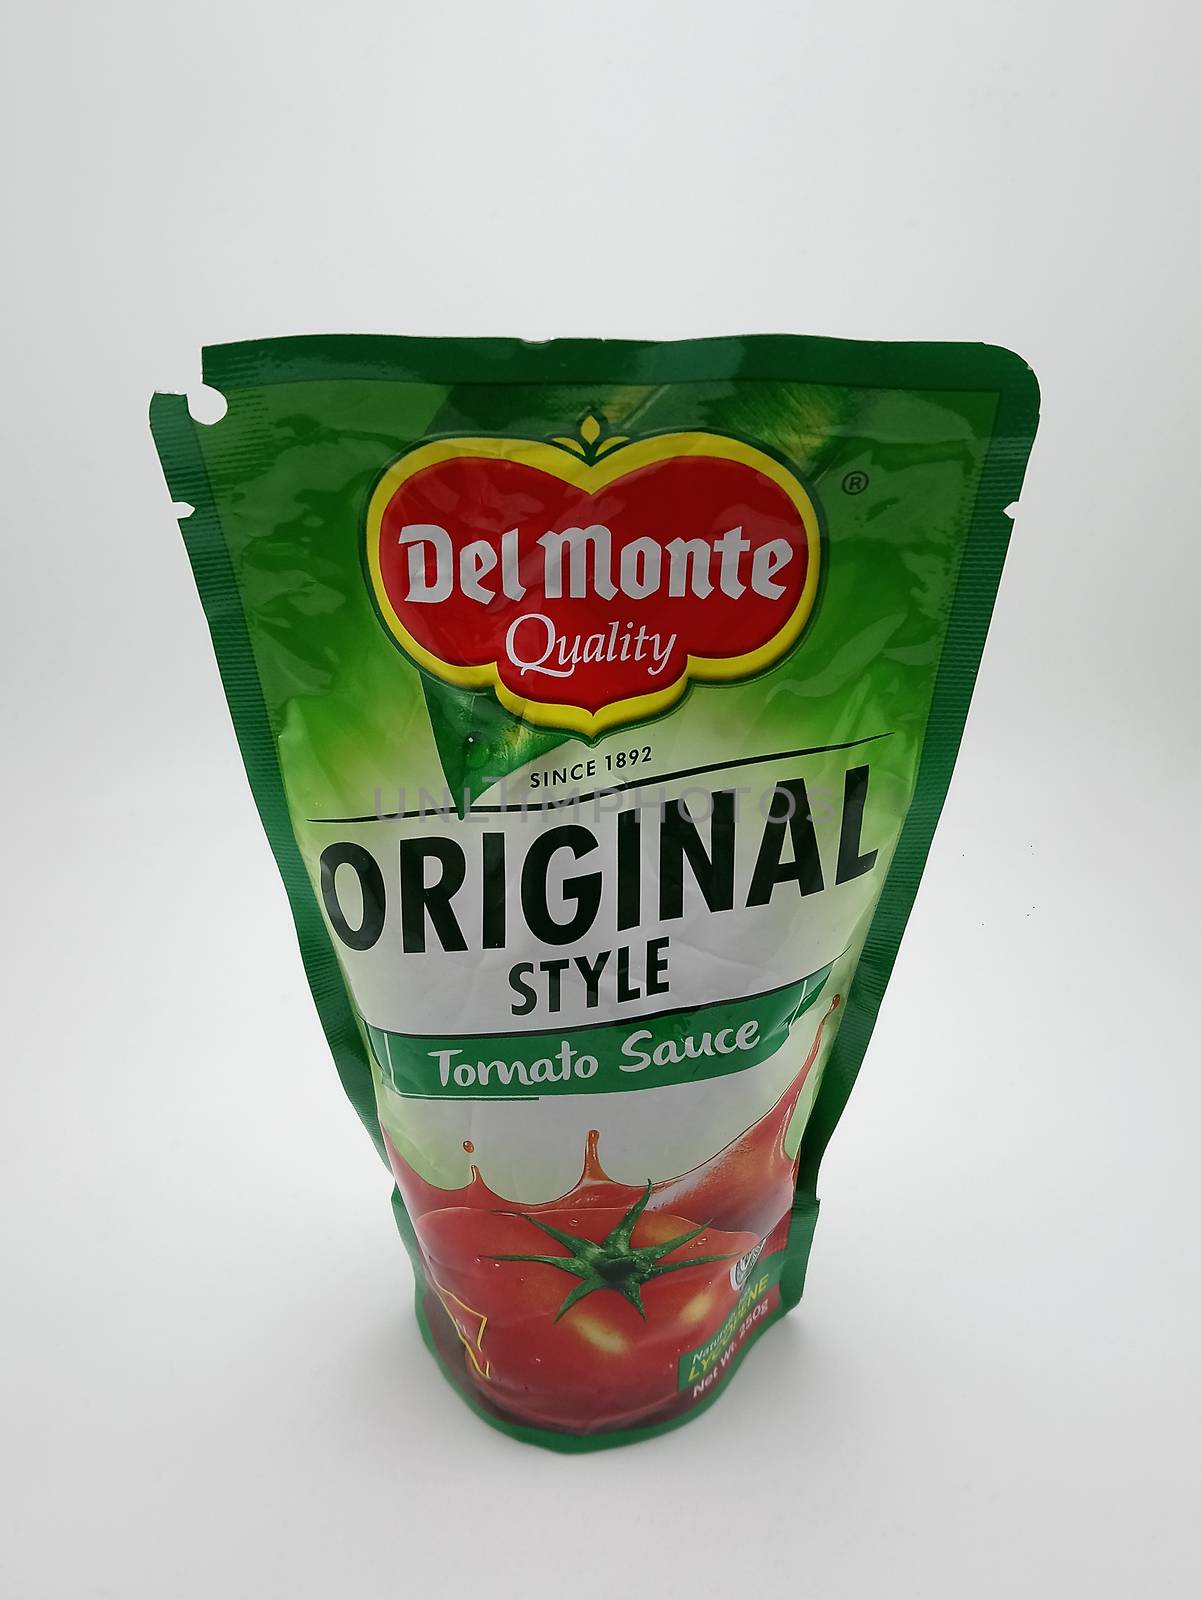 Del monte original style tomato sauce in Manila, Philippines by imwaltersy